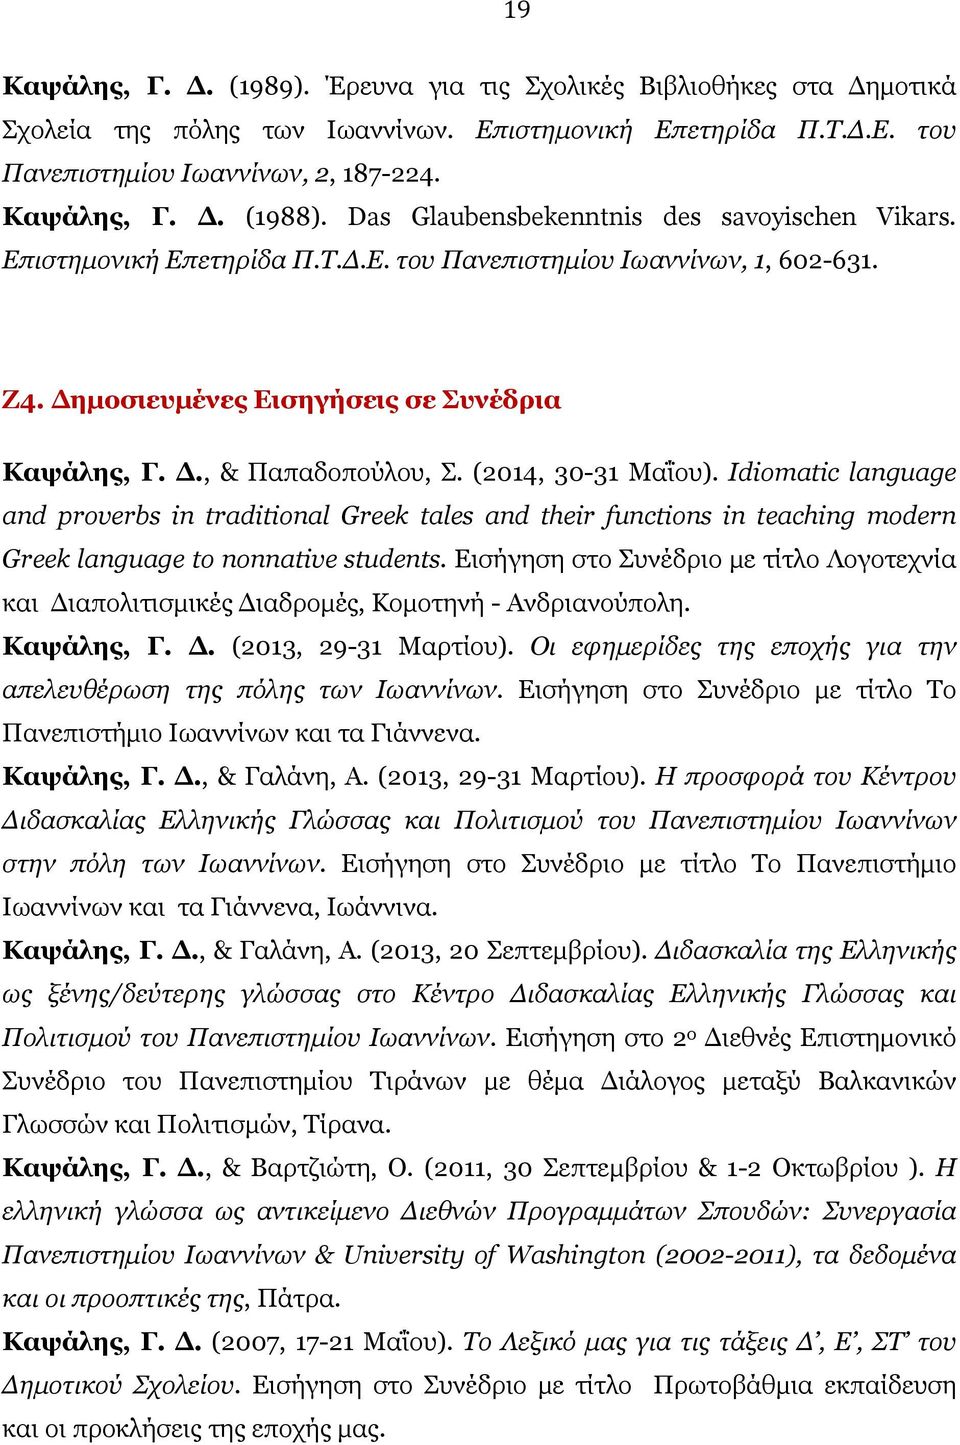 (2014, 30-31 Μαΐου). Idiomatic language and proverbs in traditional Greek tales and their functions in teaching modern Greek language to nonnative students.